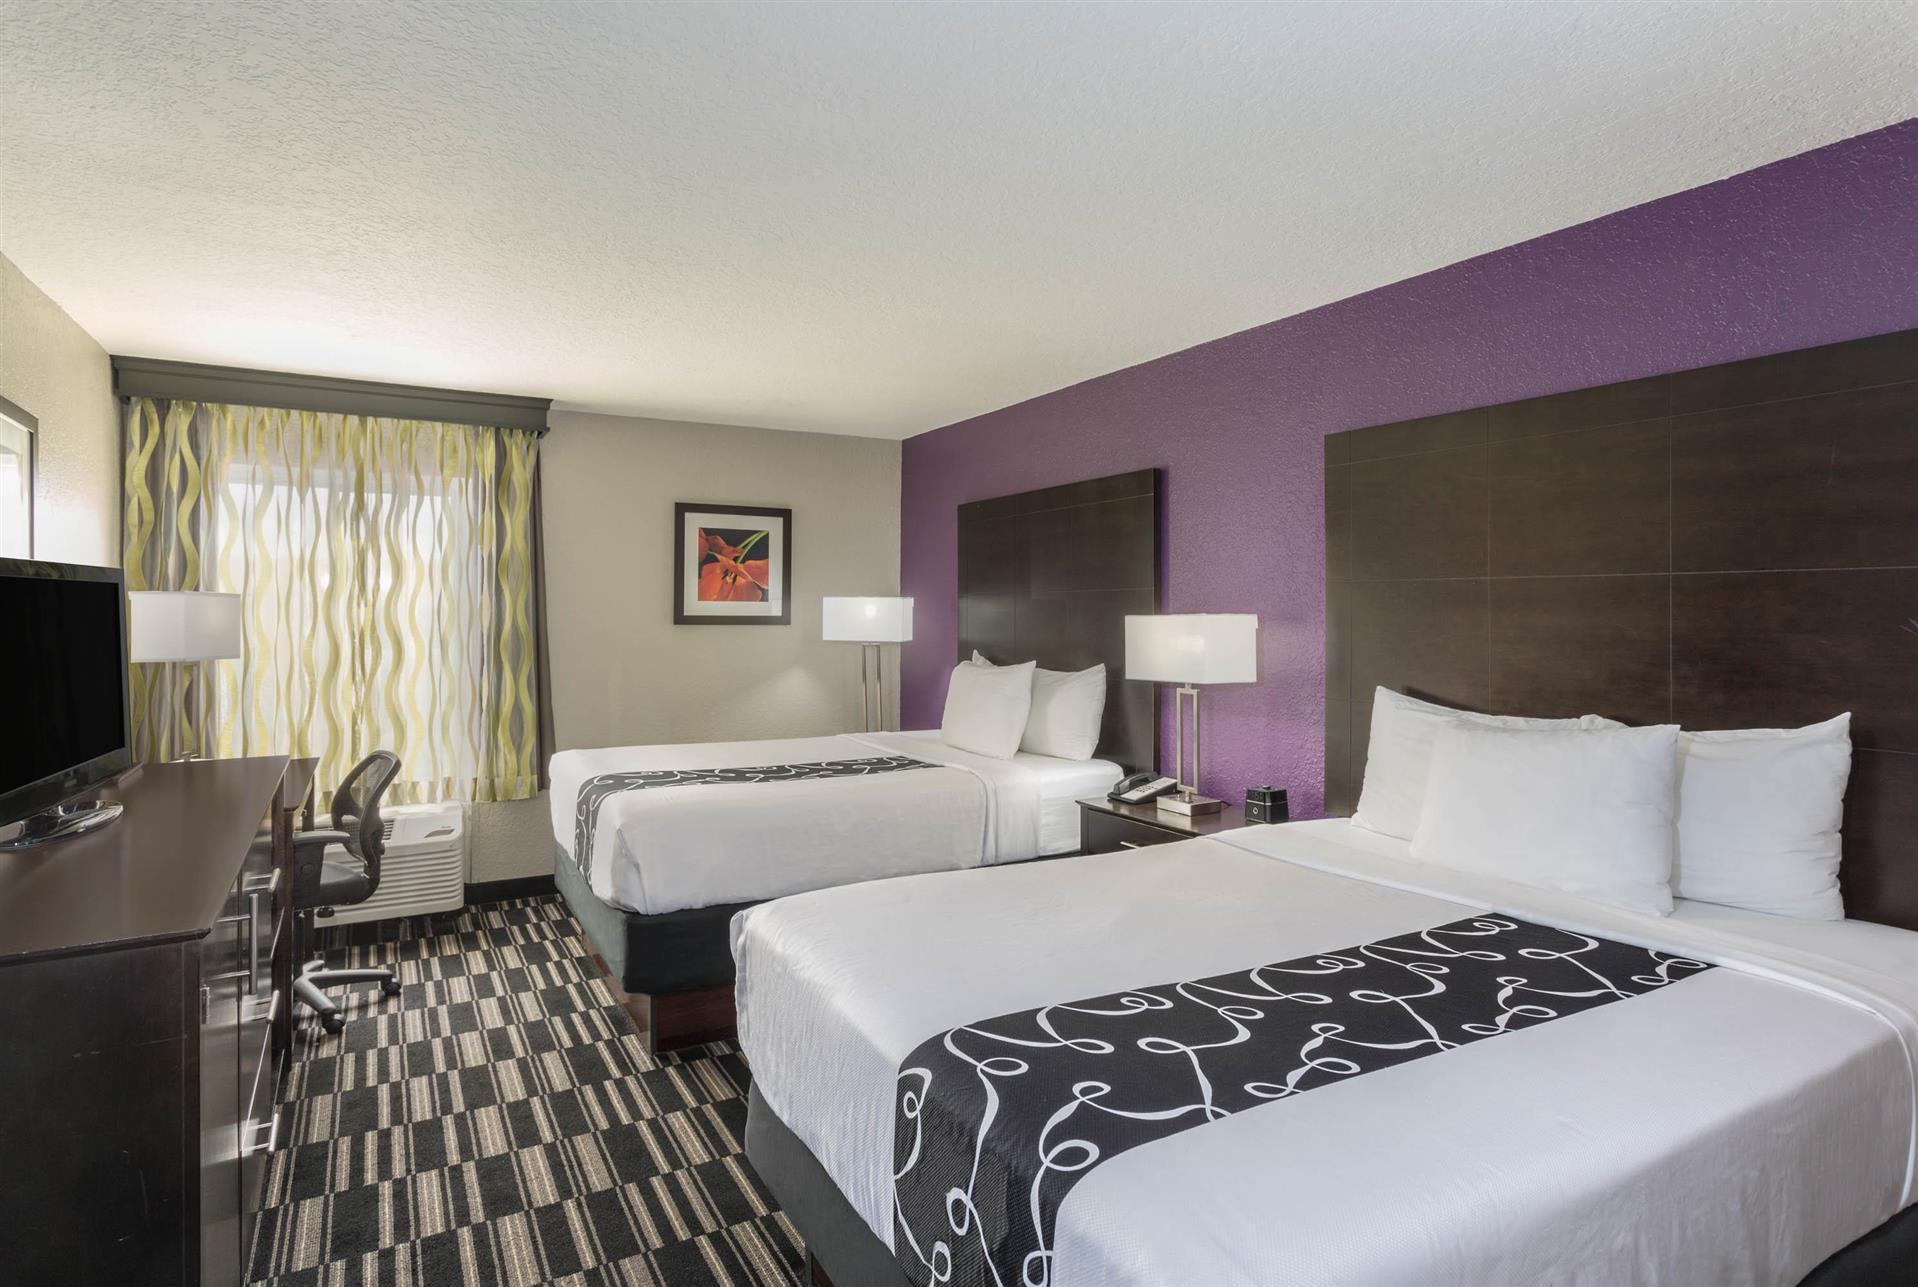 La Quinta Inn & Suites by Wyndham Orlando Universal area in Orlando, FL